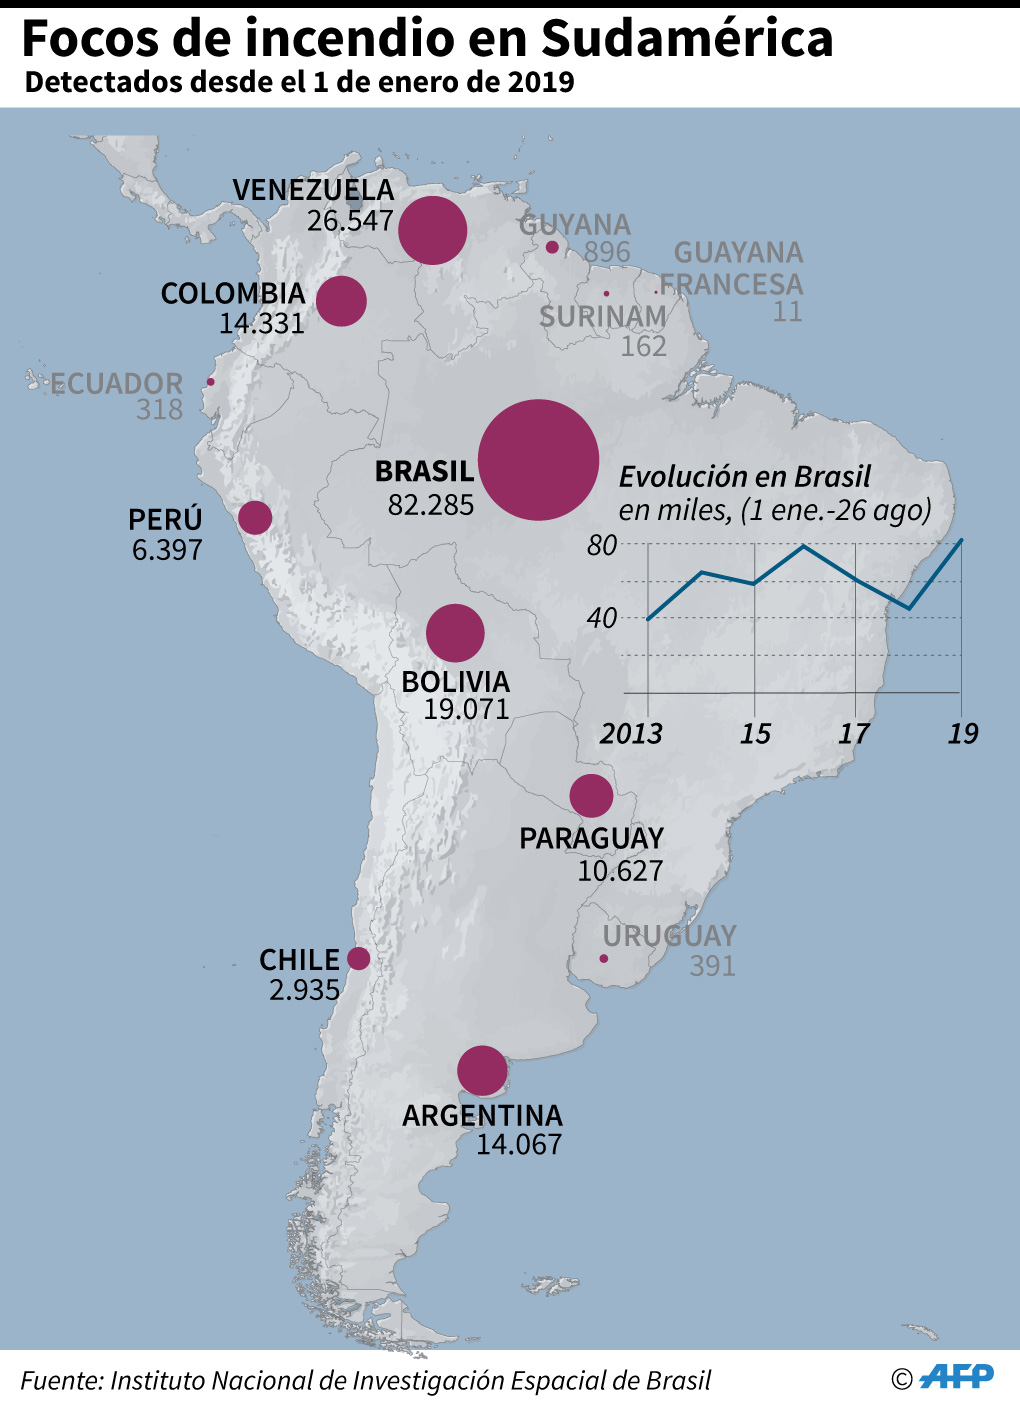 Cantidad de focos de incendio detectados en Sudamérica, por país, desde el 1 de enero de 2019. (AFP)